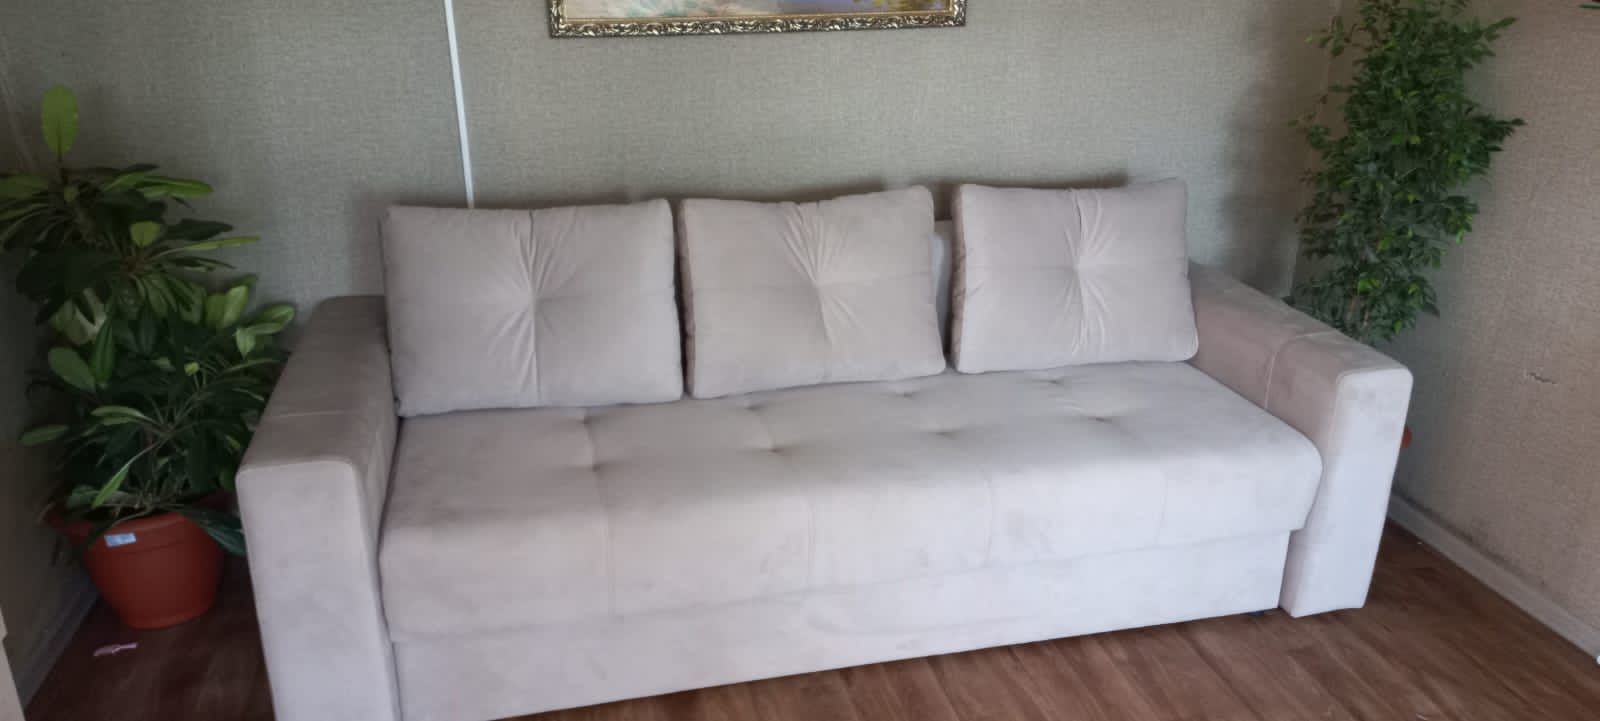 Срочно продам новый диван